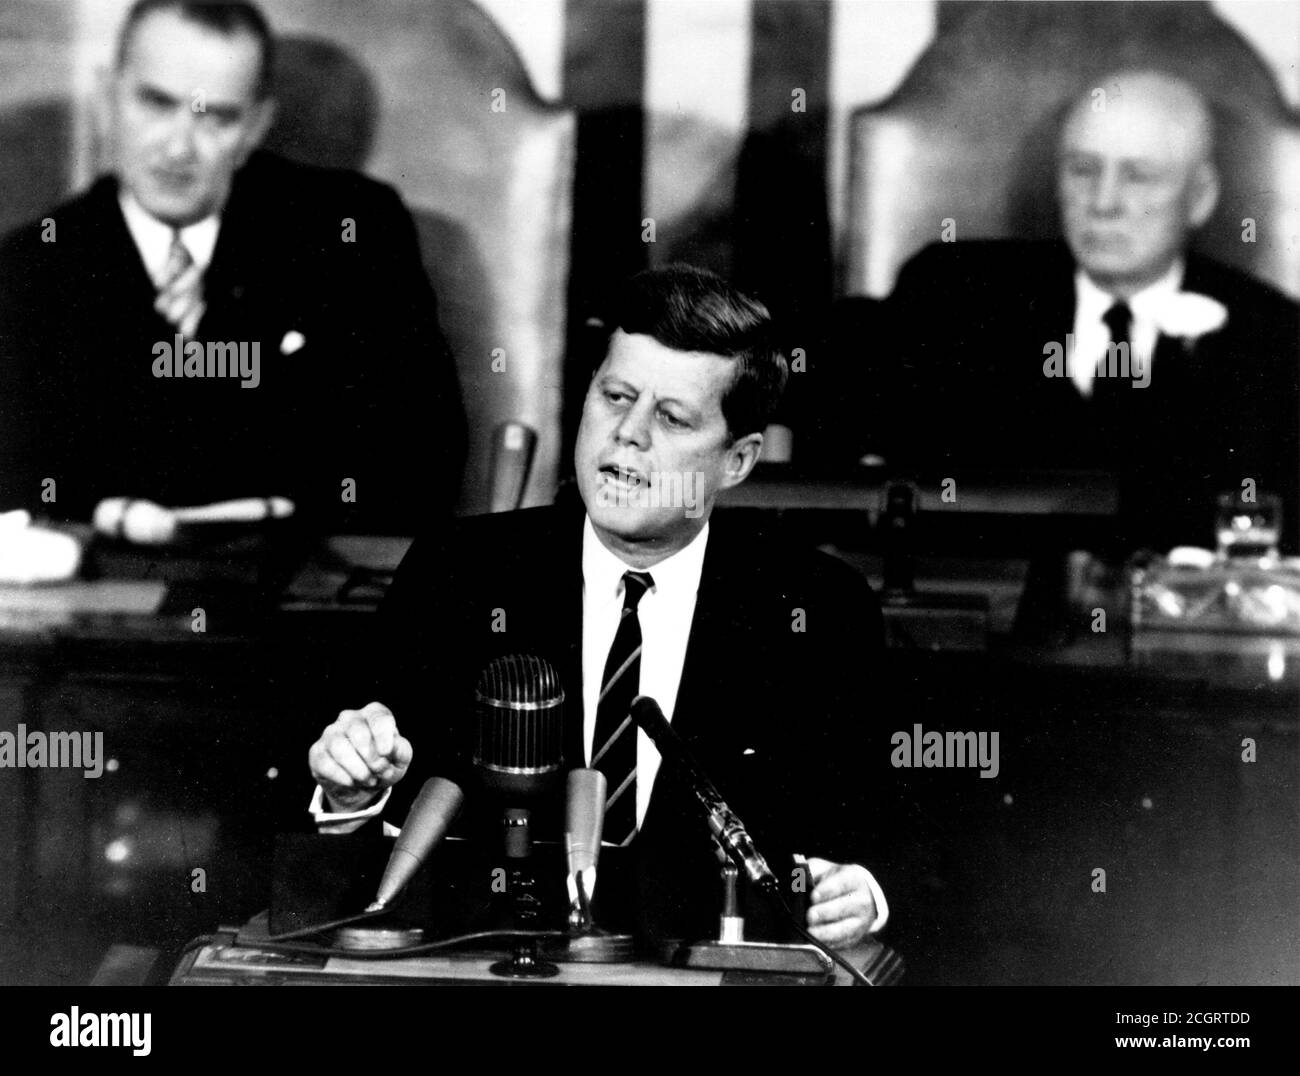 Le Président John F. Kennedy, dans son message historique à une session conjointe du Congrès, a déclaré le 25 mai 1961, «... Je crois que cette nation devrait s'engager à atteindre l'objectif, avant que cette décennie ne soit terminée, d'envoyer un homme sur la Lune et de le retourner en toute sécurité sur la Terre ». Cet objectif a été atteint lorsque l'astronaute Neil A. Armstrong est devenu le premier homme à se mettre le pied sur la Lune à 22 h 56 HAE, le 20 juillet 1969. On y trouve, (à gauche) le vice-président Lyndon Johnson et (à droite) le président de la Chambre Sam T. Rayburn. Banque D'Images